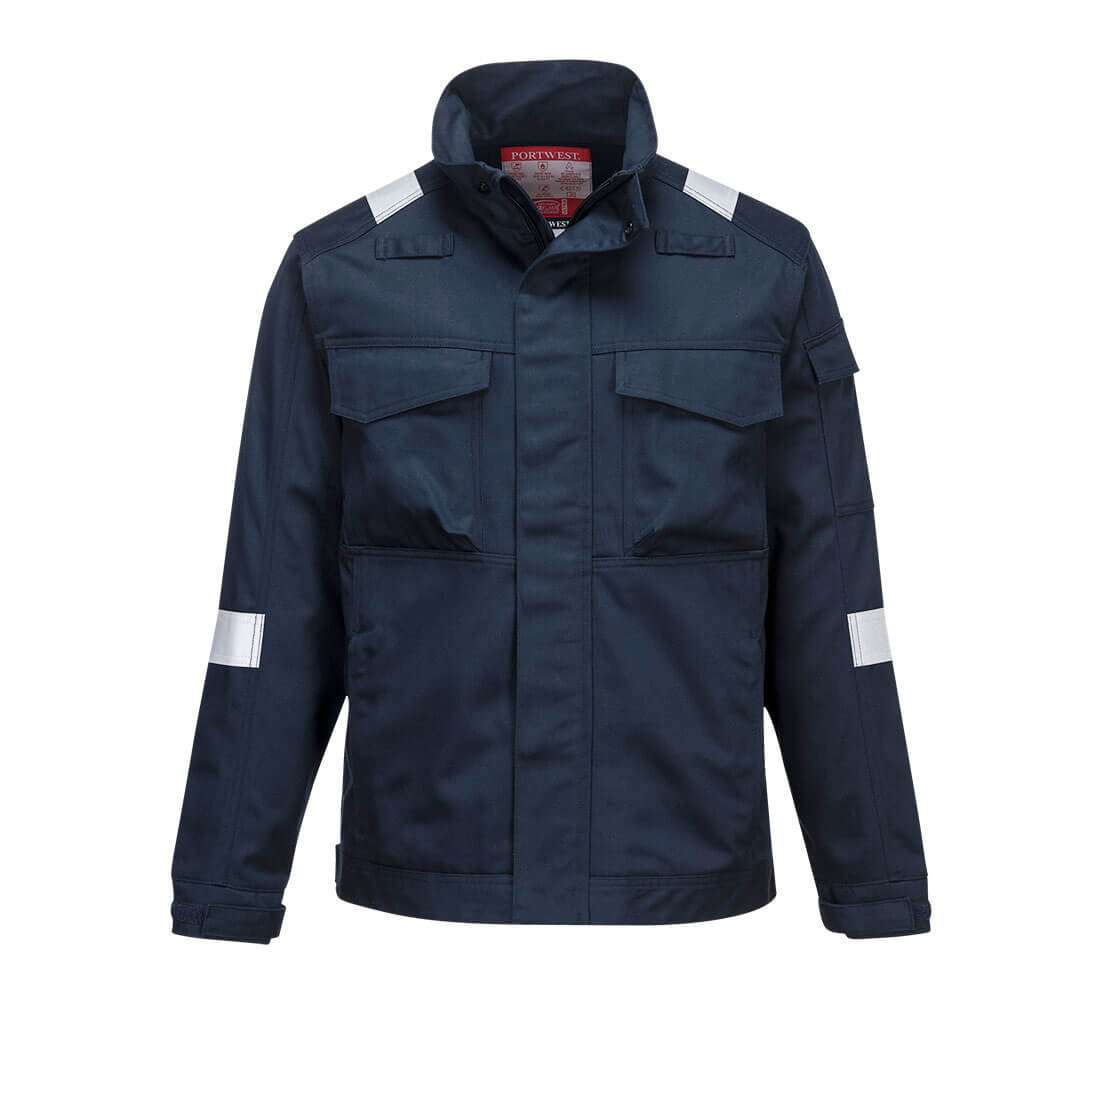 Bizflame Industry Jacket   (FR68)